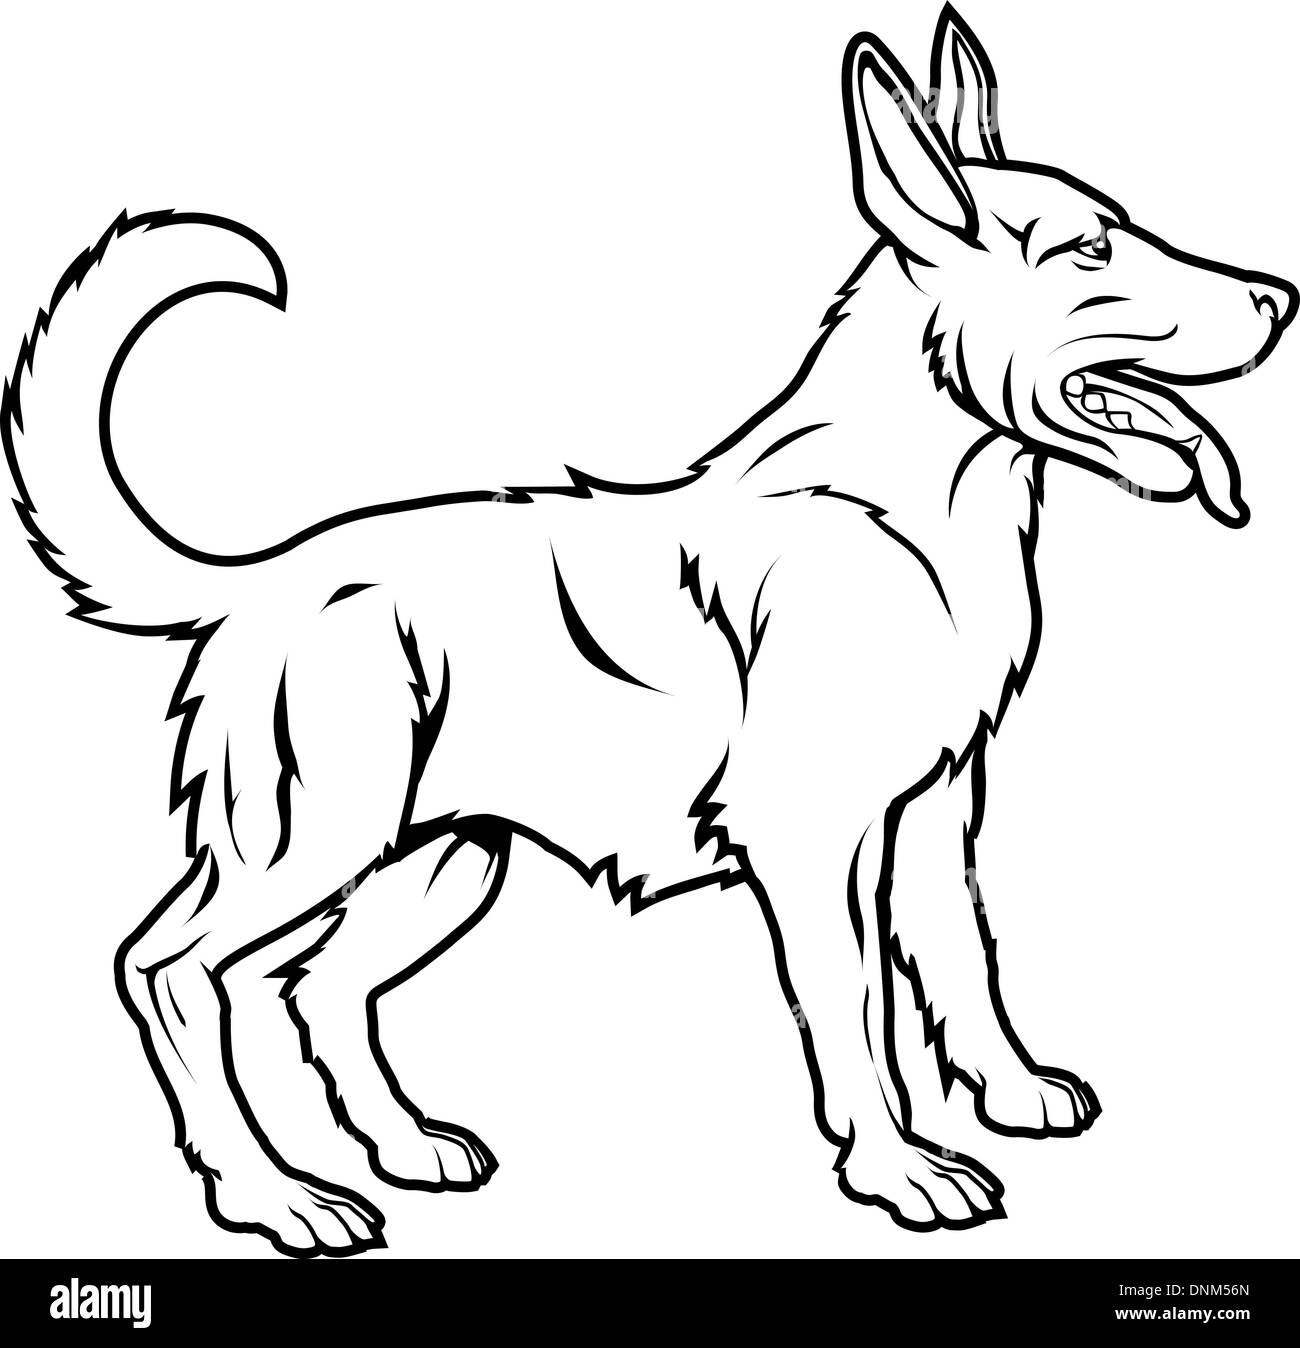 Une illustration d'un chien stylisé peut-être un tatouage de chien Illustration de Vecteur